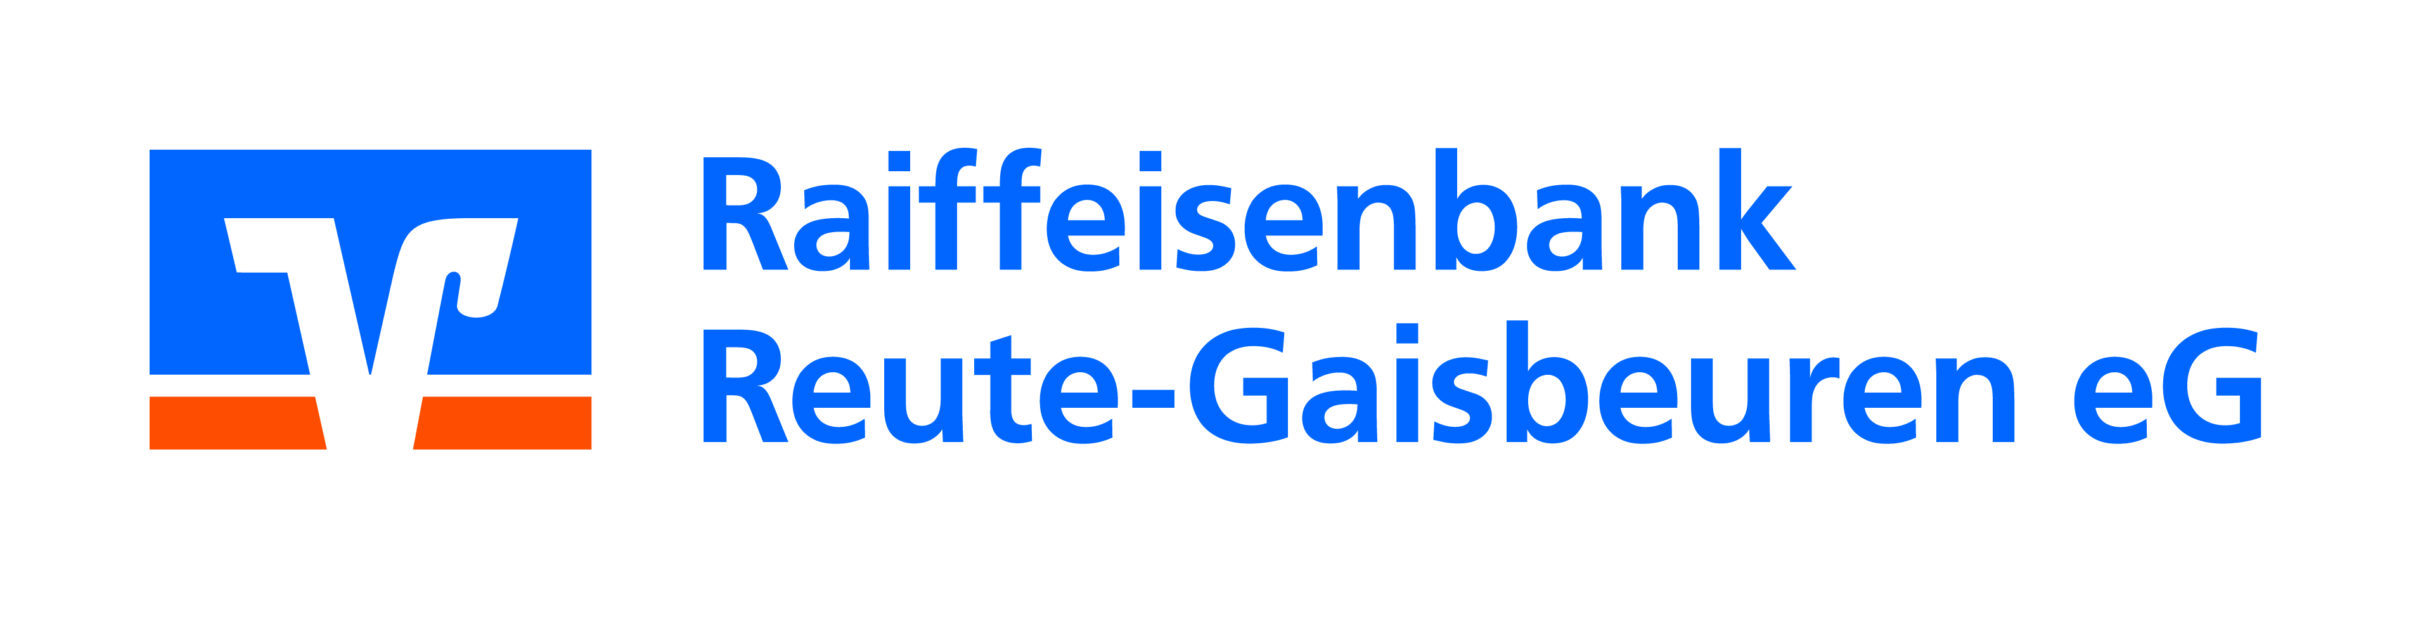 Raiffeisenbanken Reute-Gaisbeuren eG Karriere